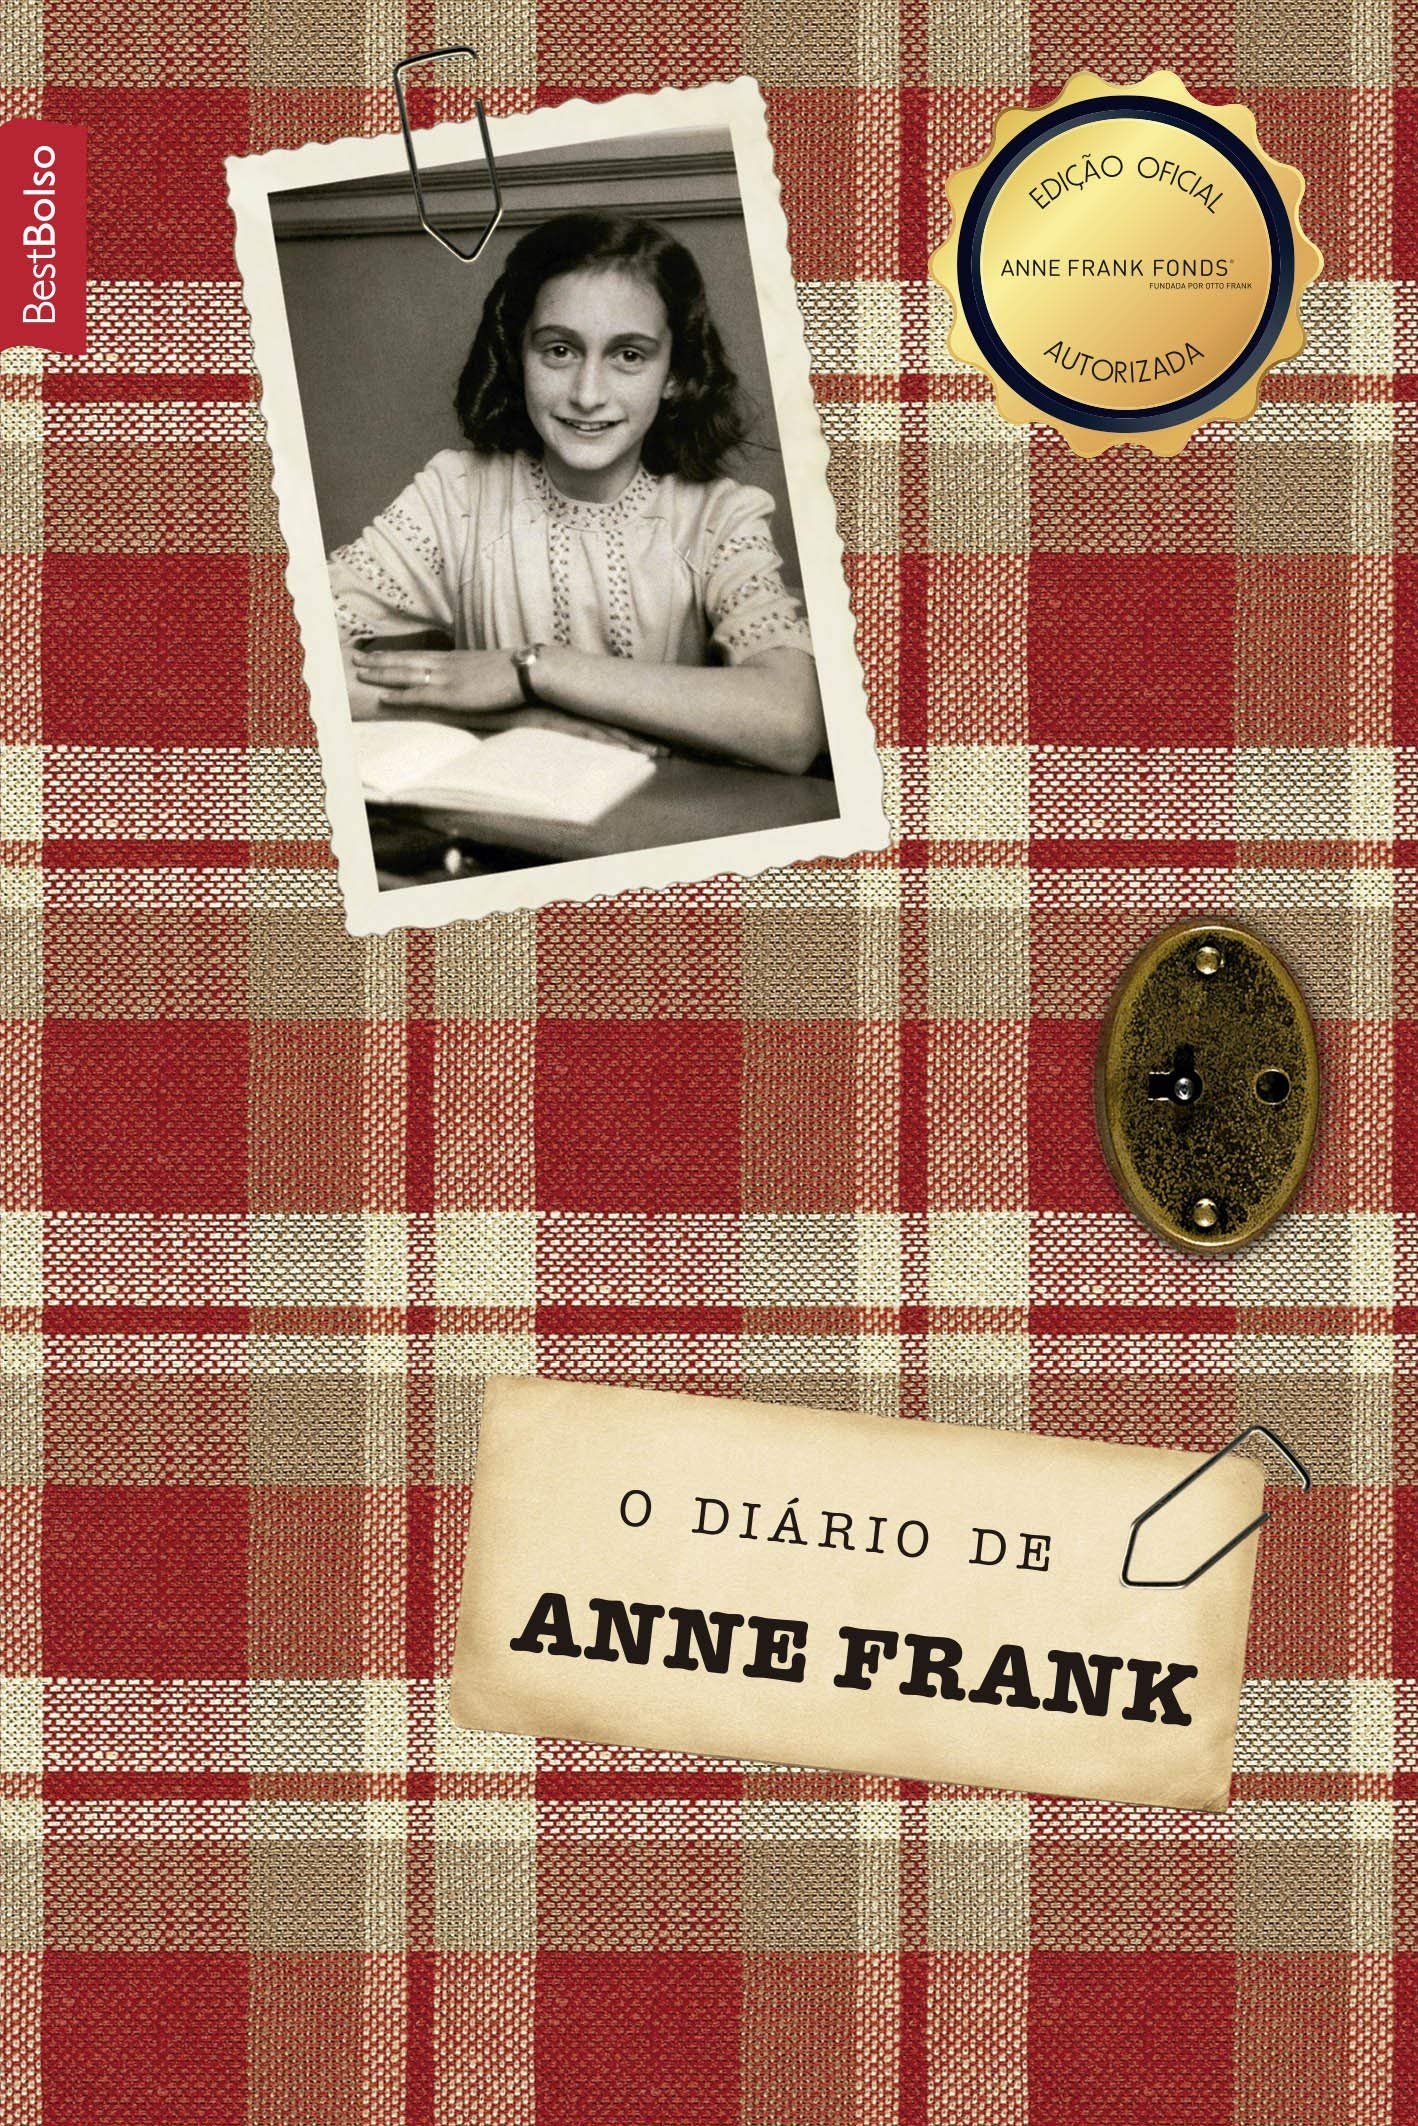 Capa do livro “O Diário de Anne Frank”